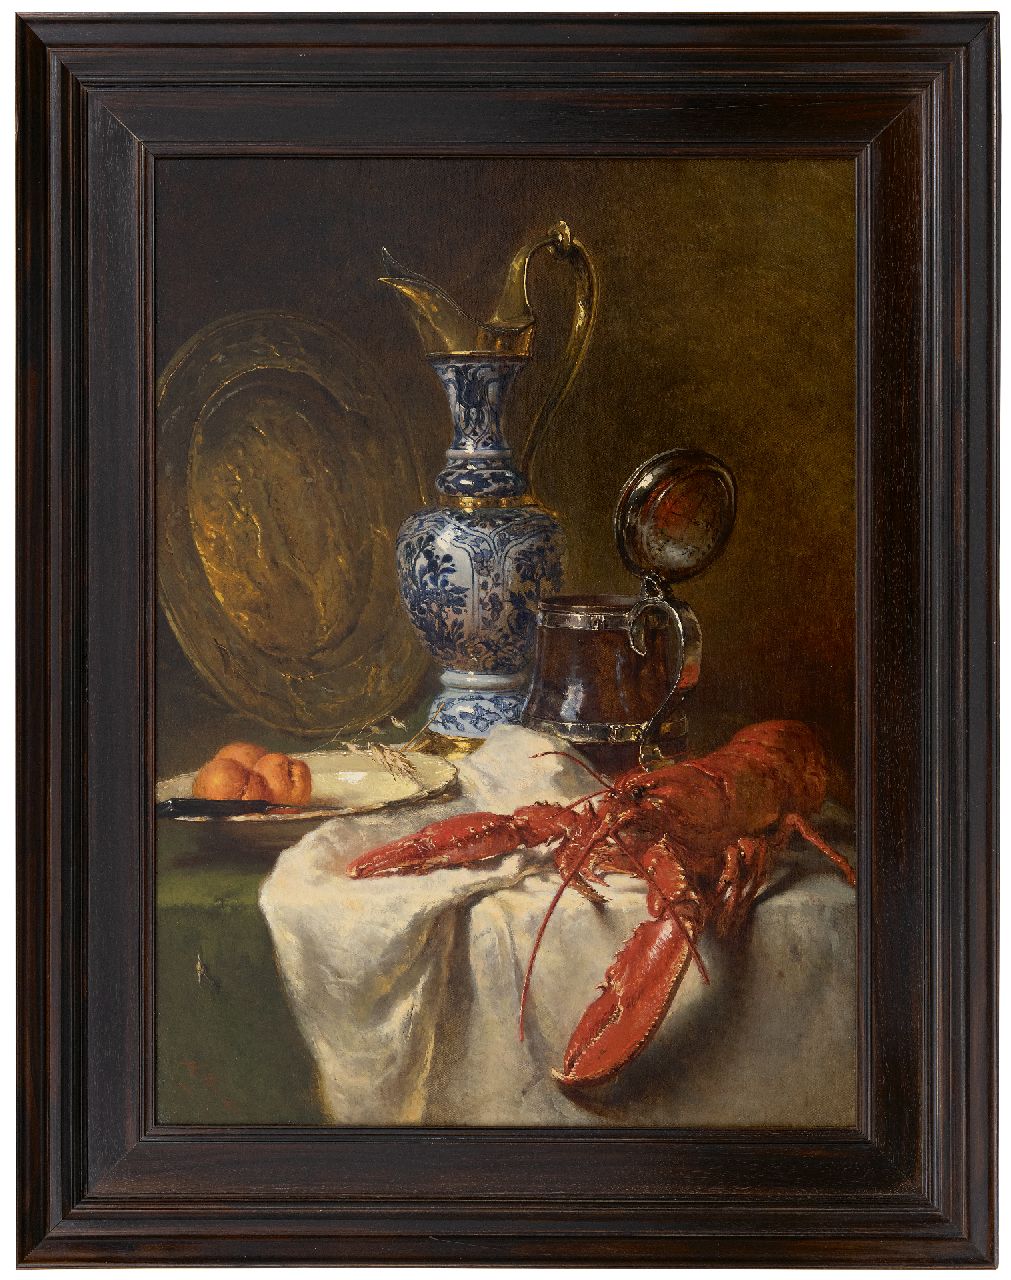 Vos M.  | Maria Vos, Stilleven met pronkkan en kreeft, olieverf op doek 80,0 x 58,0 cm, gesigneerd linksonder en gedateerd 1875